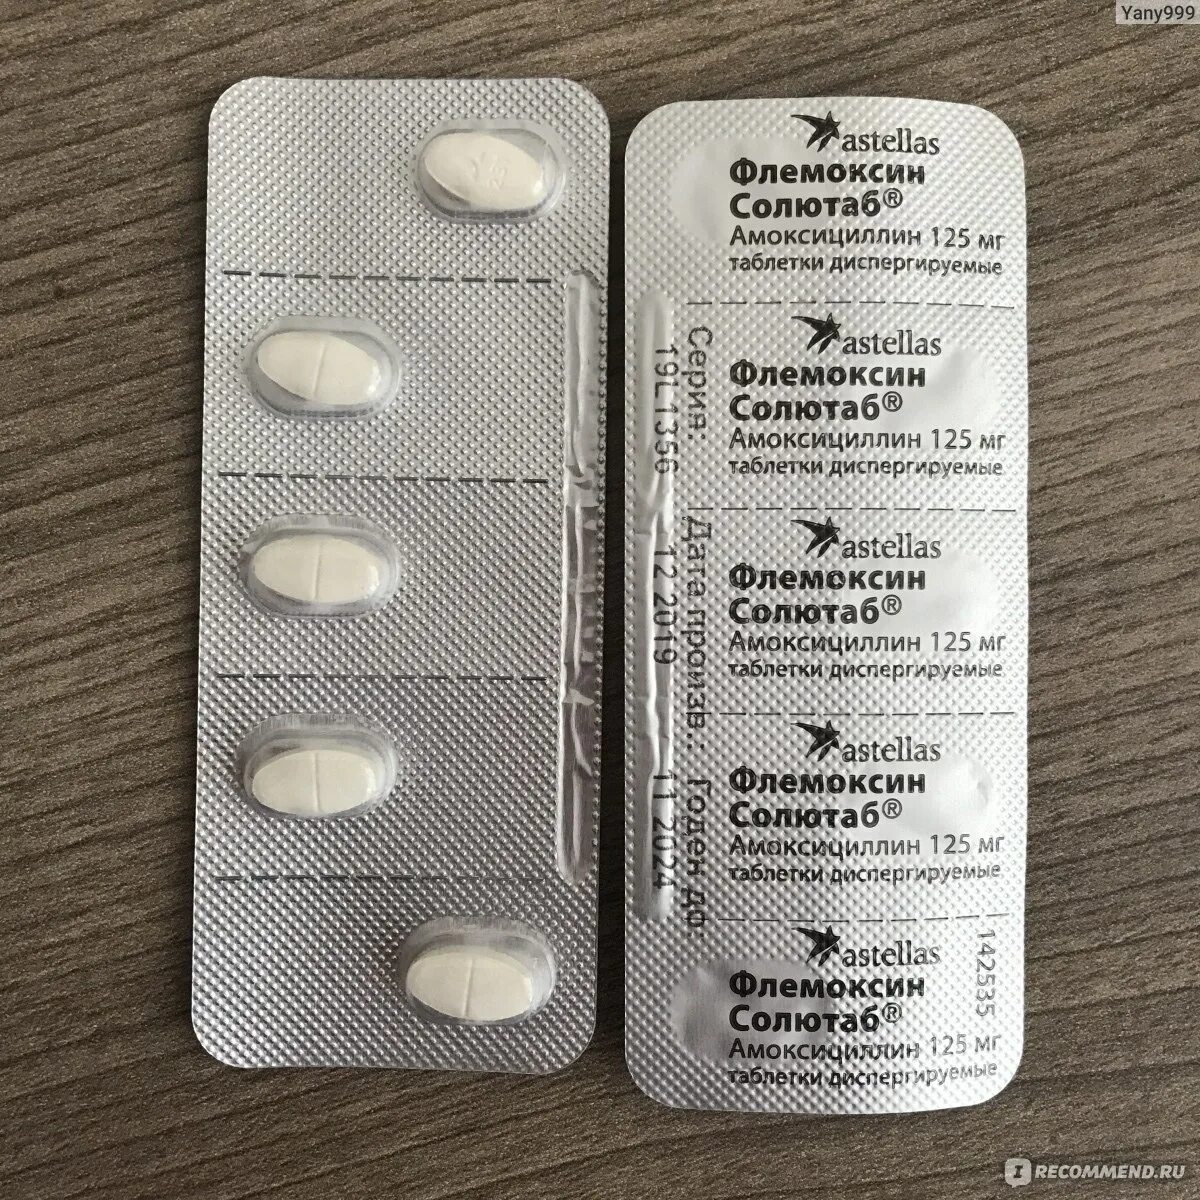 Флемоксин солютаб таблетки диспергируемые детям